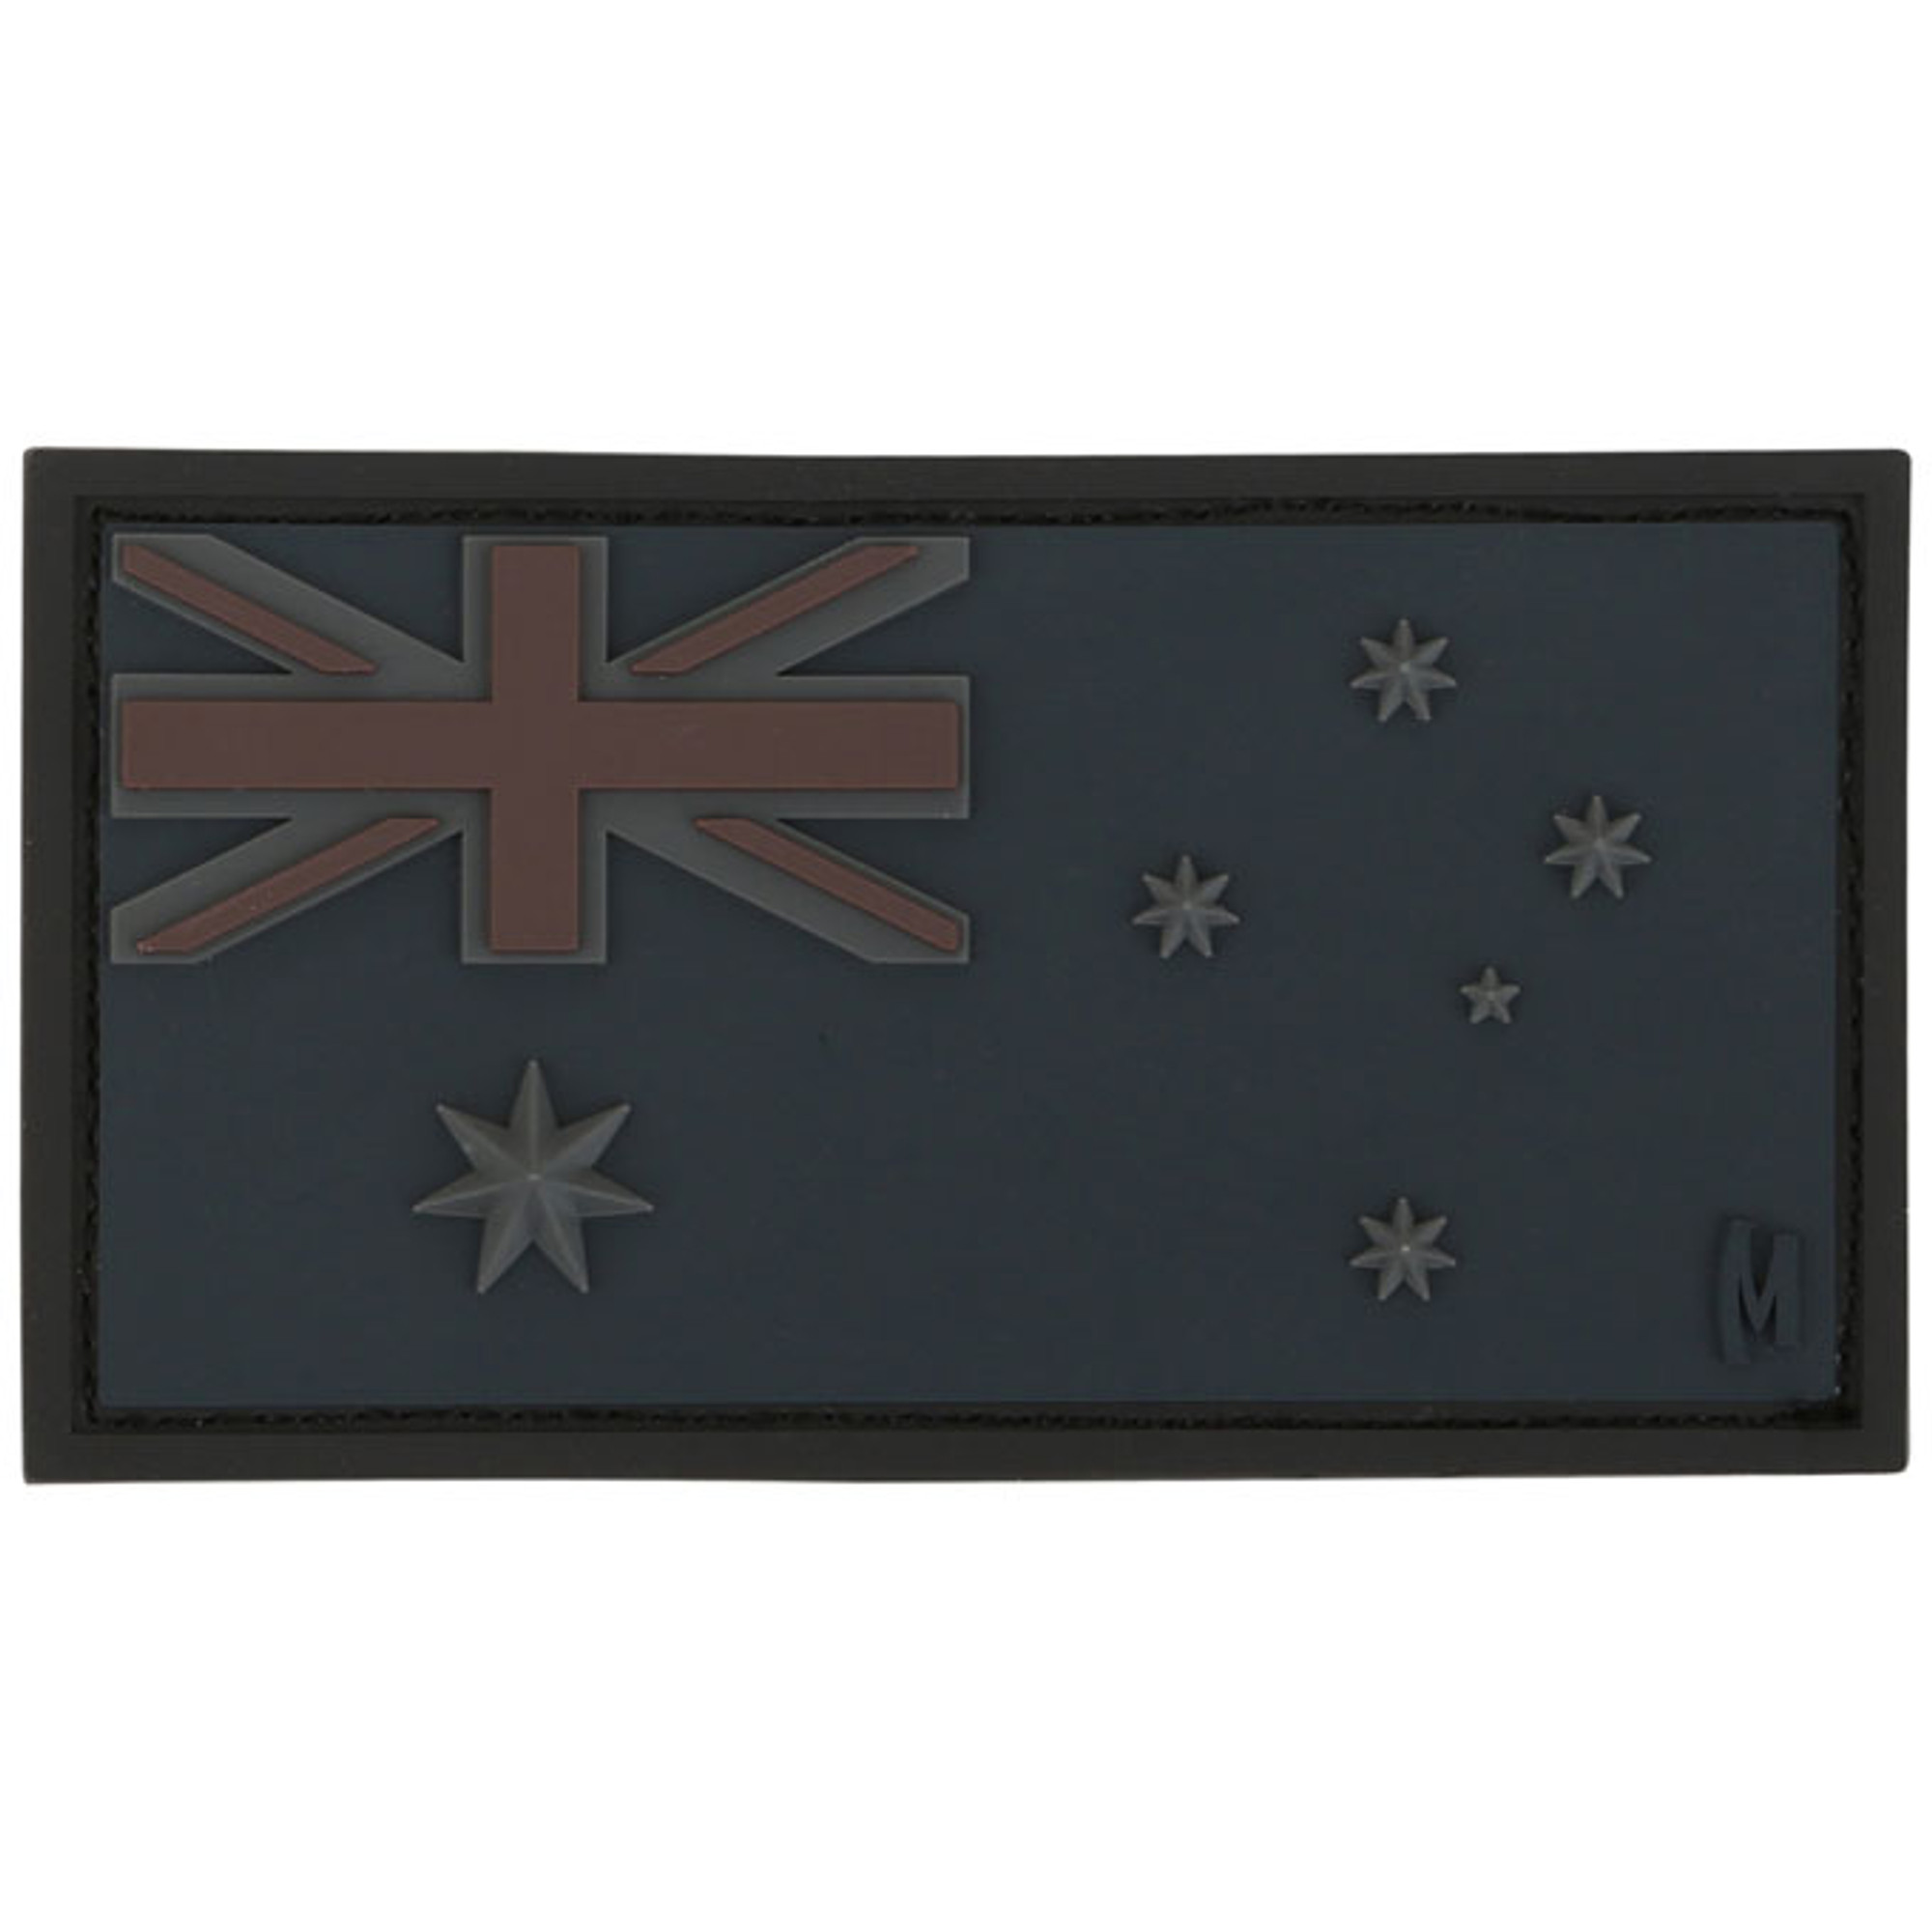 Australia Flag PVC - Morale Patch - Stealth